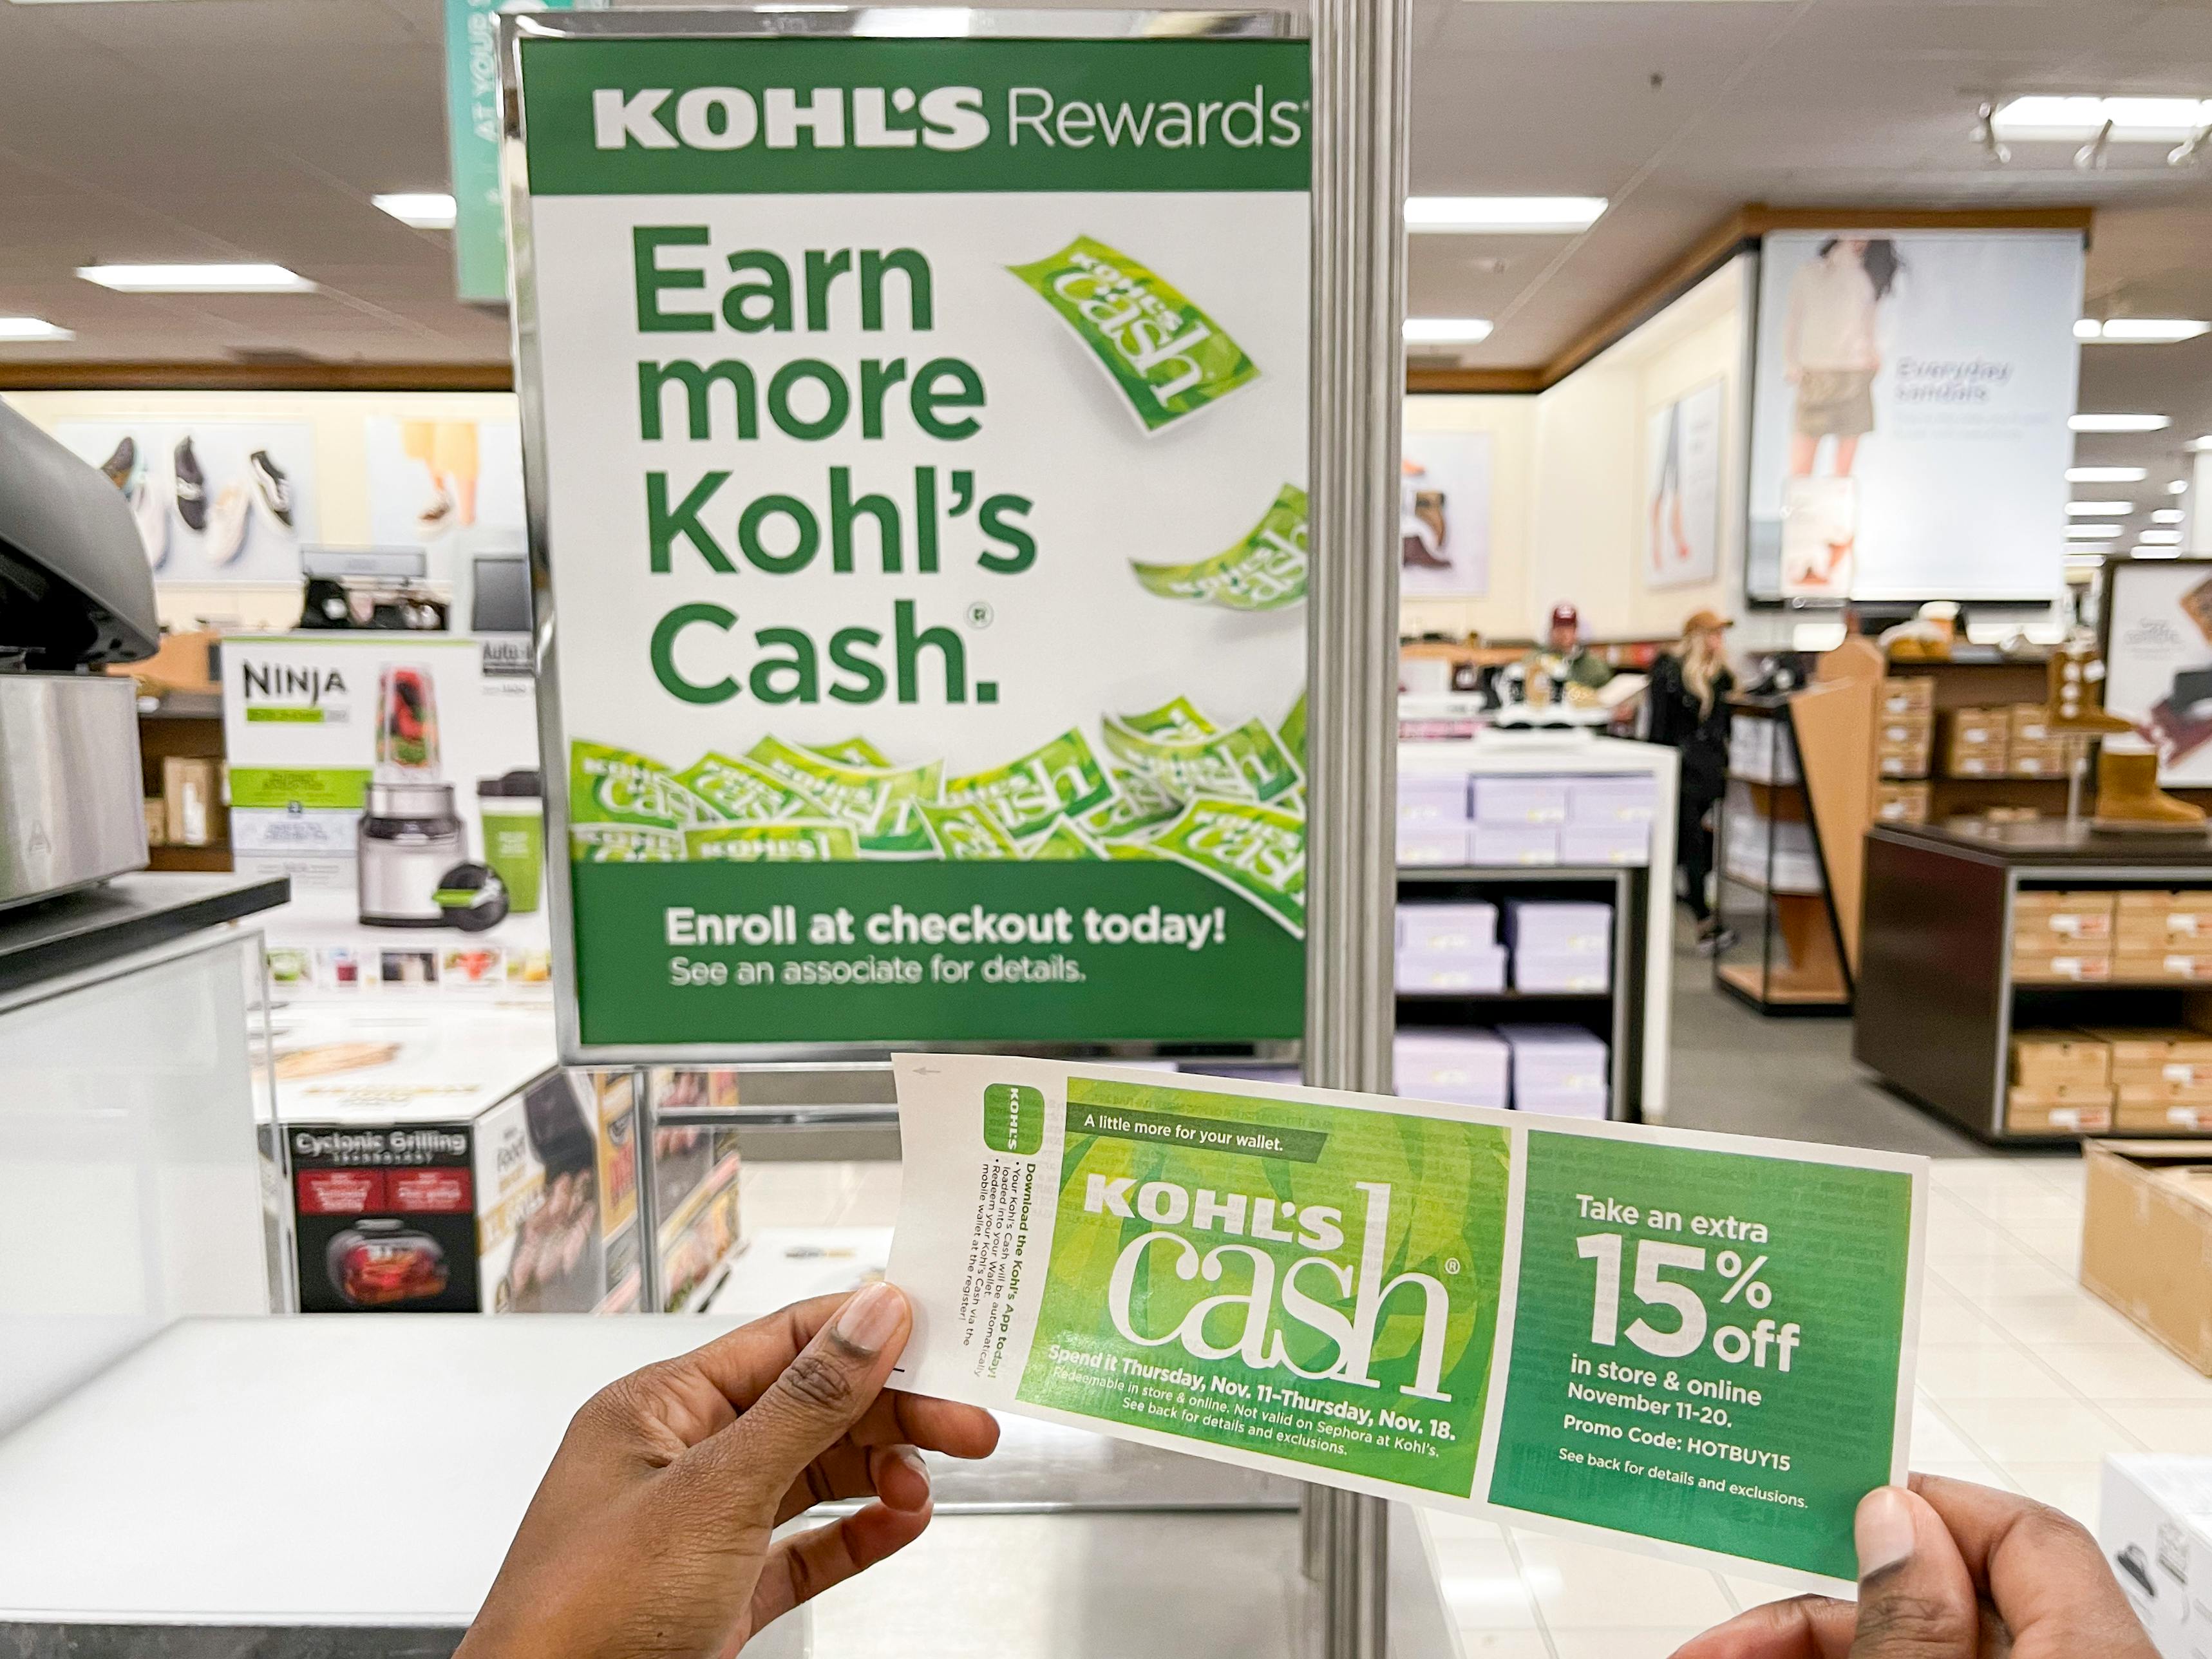 A person holding Kohl's Cash near a Kohl's Cash sign inside Kohl's.